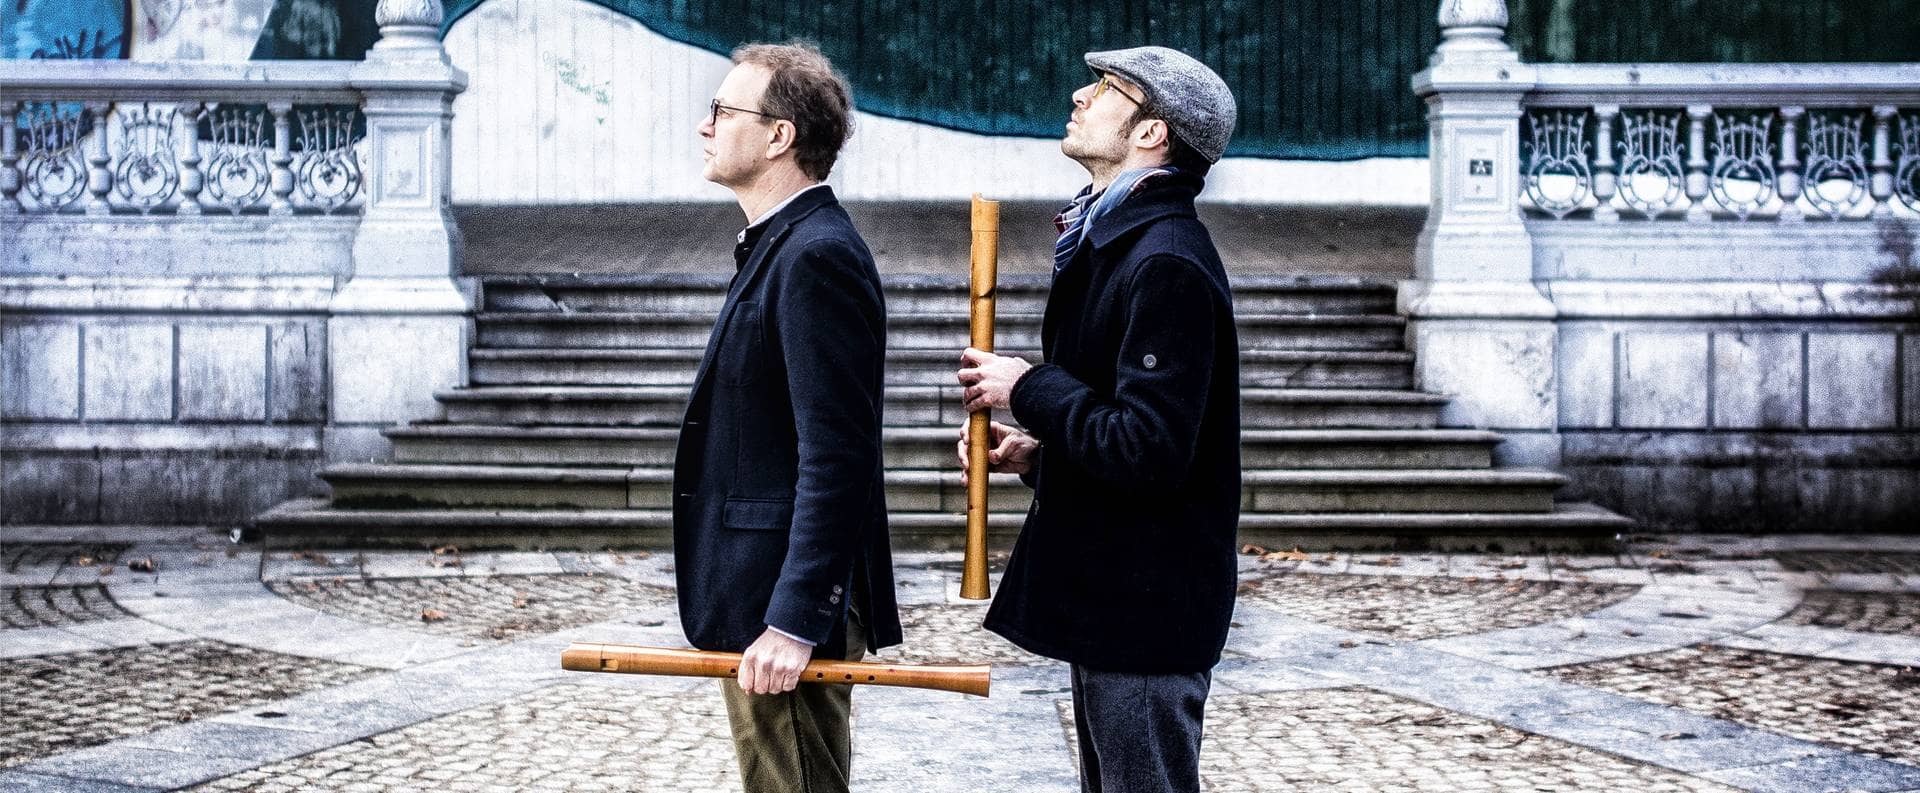 Zwei Männer stehen mit Blockflöten in der Hand vor einer Veranda